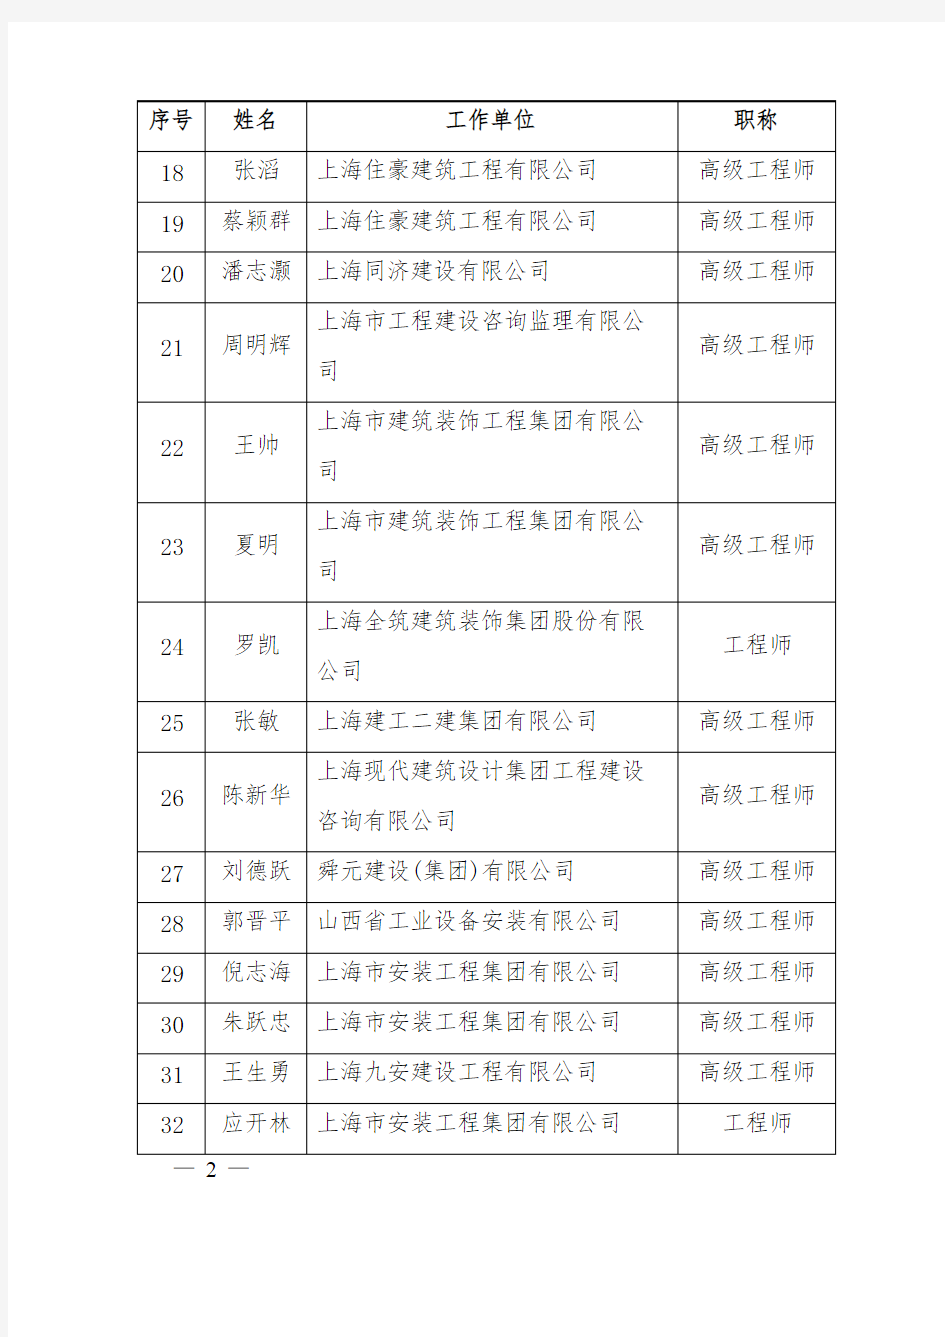 上海市建设工程评标专家库新增入库专家名单